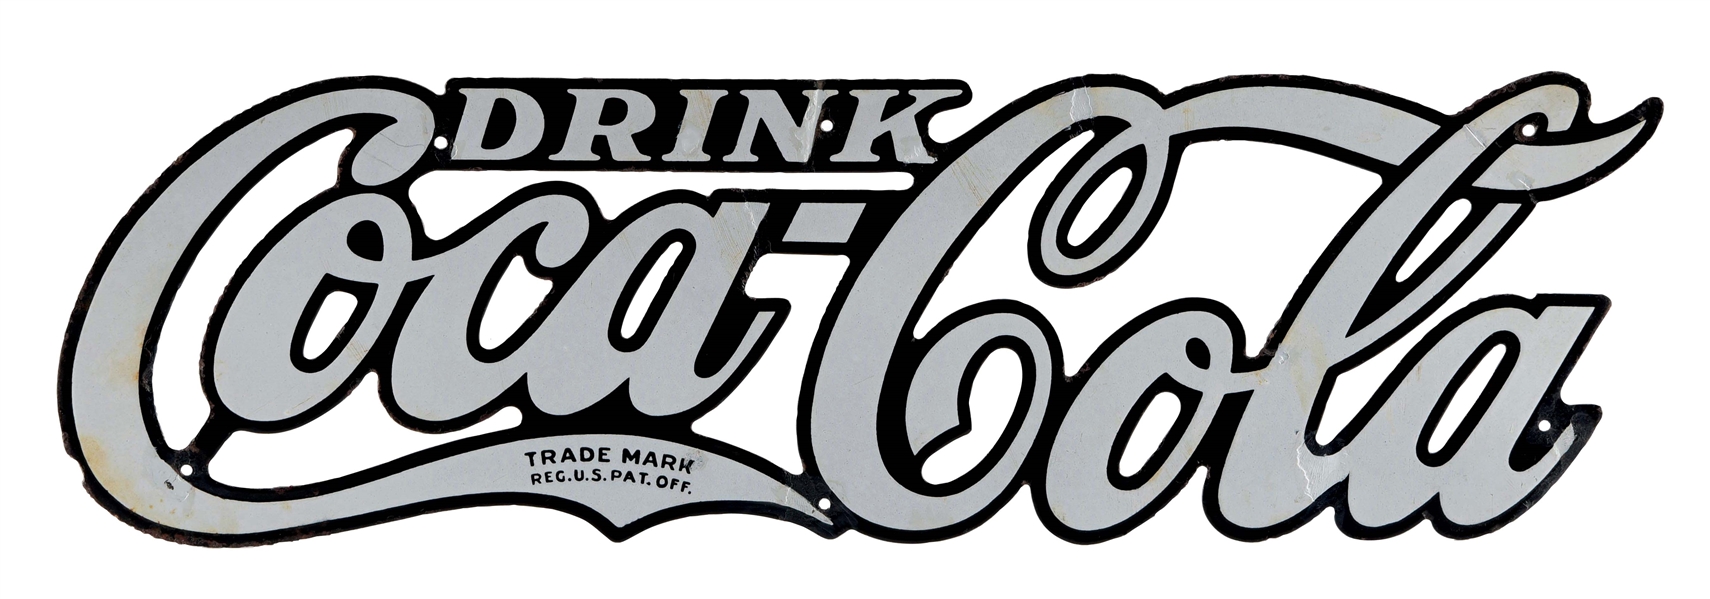 DRINK COCA-COLA DIE-CUT PORCELAIN COOLER SIGN.